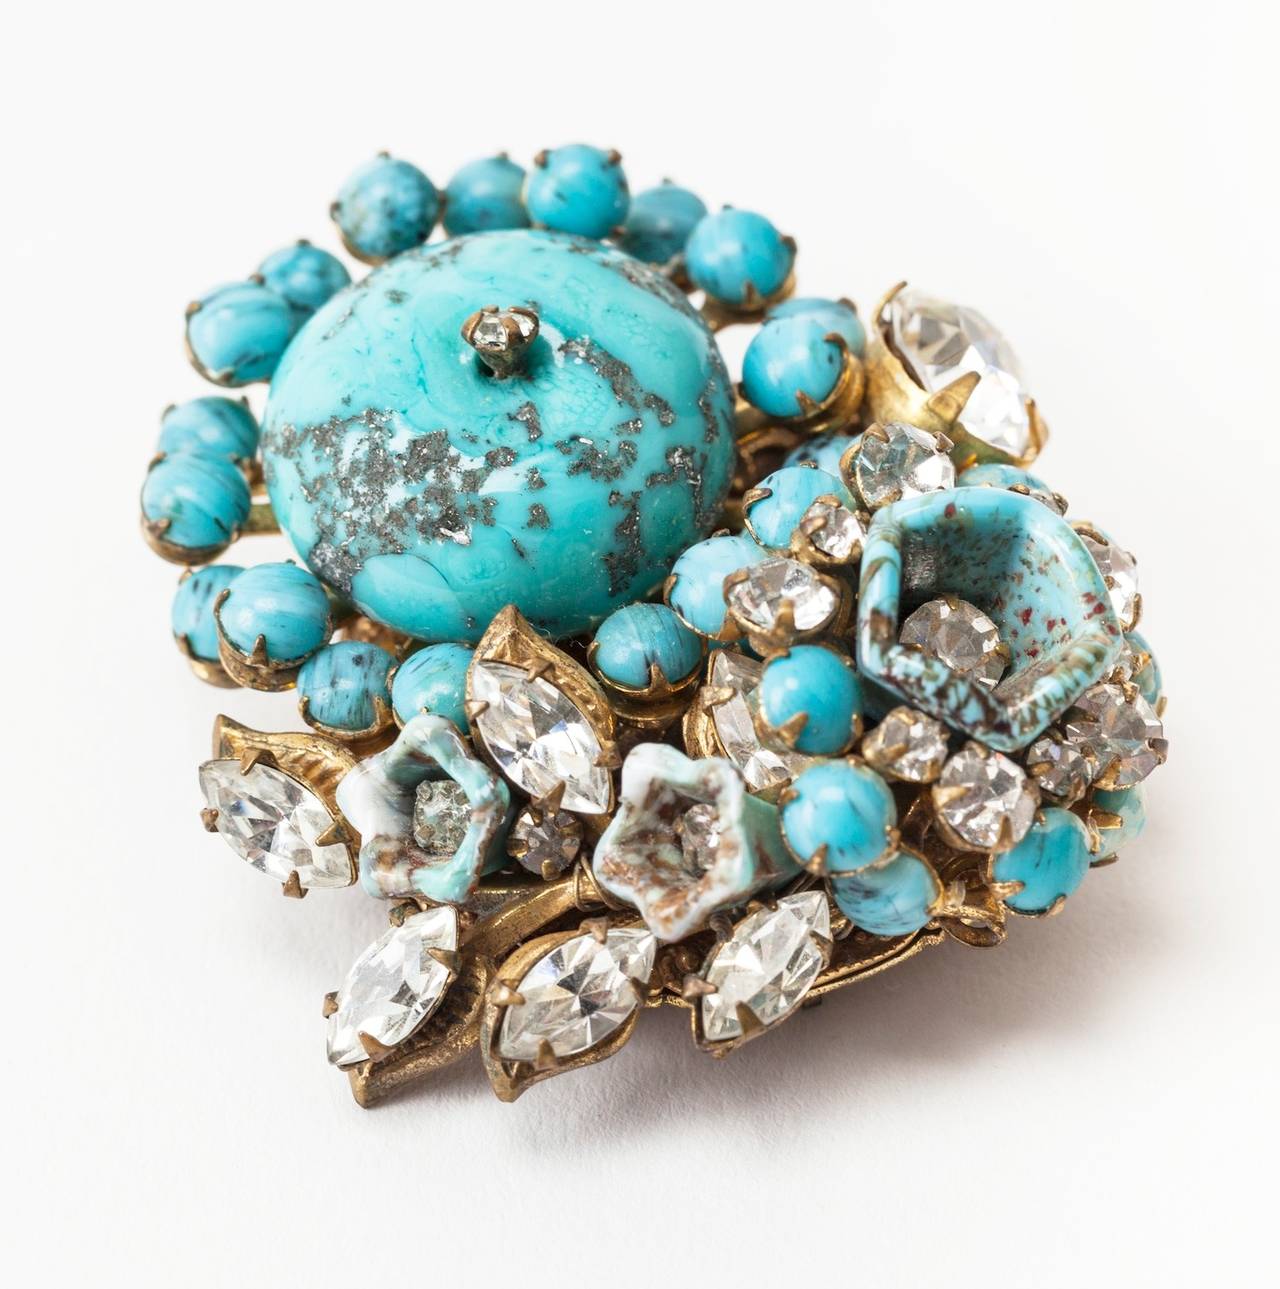 Broche Miriam Haskell réalisée à la main, composée de fausses turquoises et de cristaux diamantés, sur une base en filigrane doré russe. années 1950, États-Unis.
Excellent état.